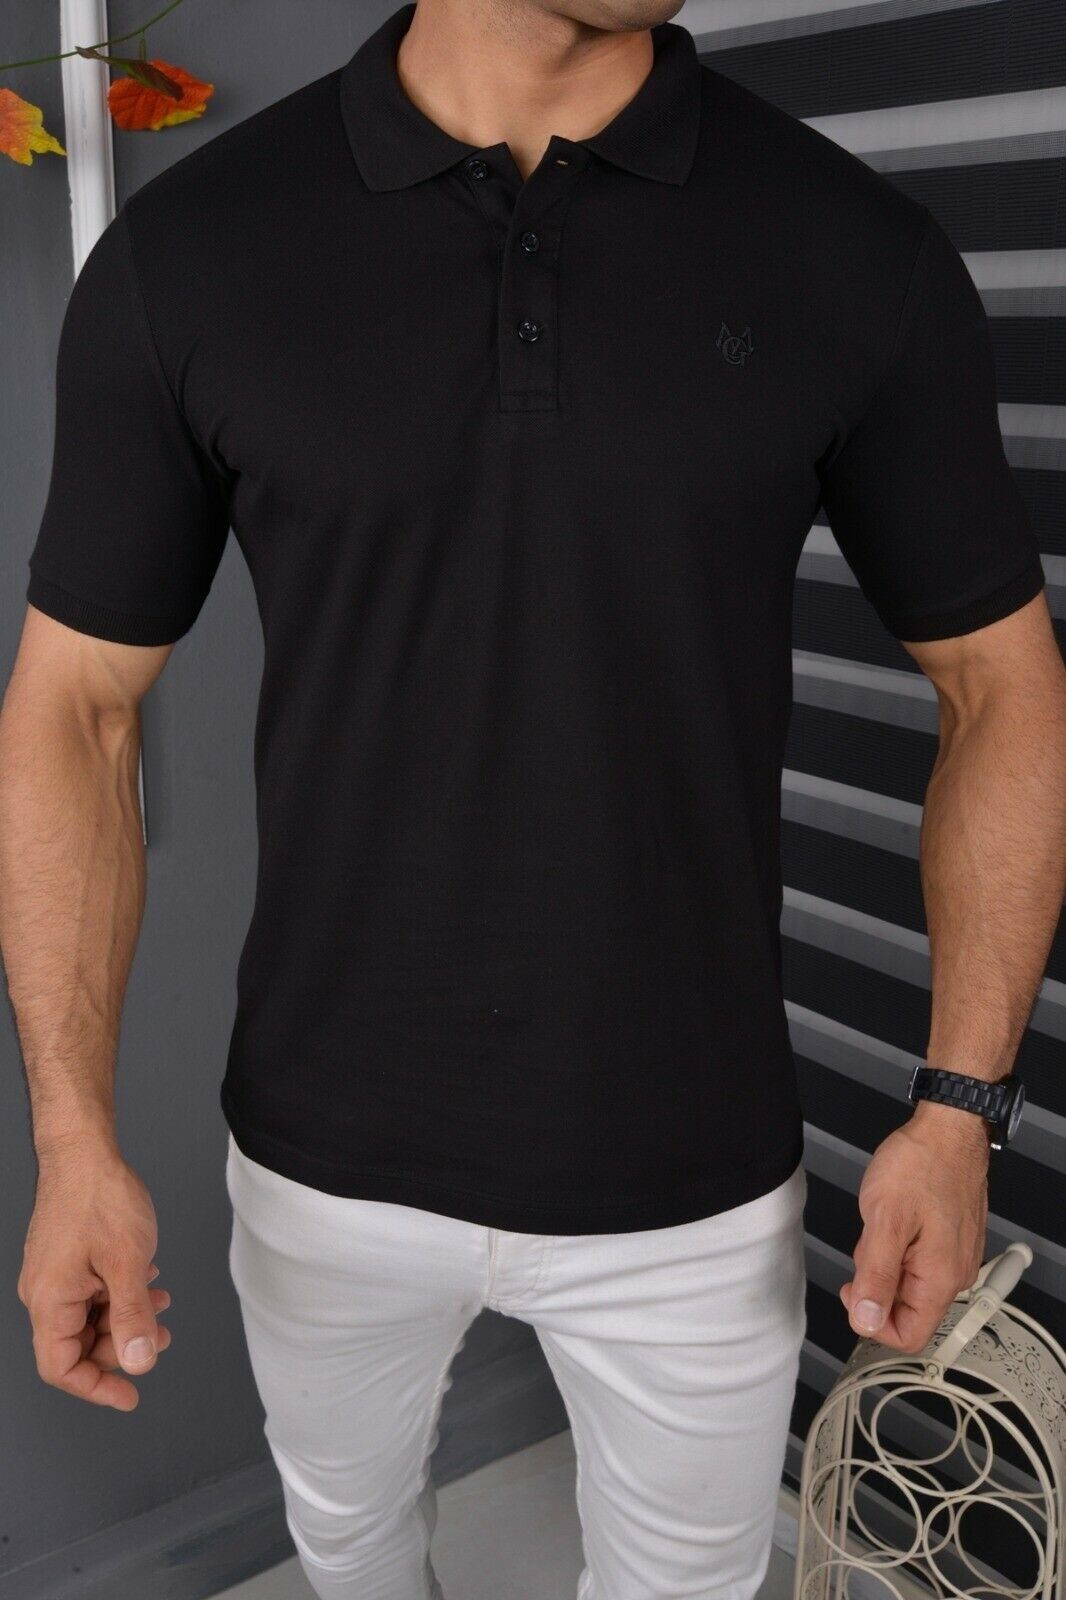 Kurzarm T-Shirt Polohemd Kragen Baumwolle Poloshirt Jeans Herren Megaman mit Premium Schwarz Poloshirt Basic Freizeit Fit Slim